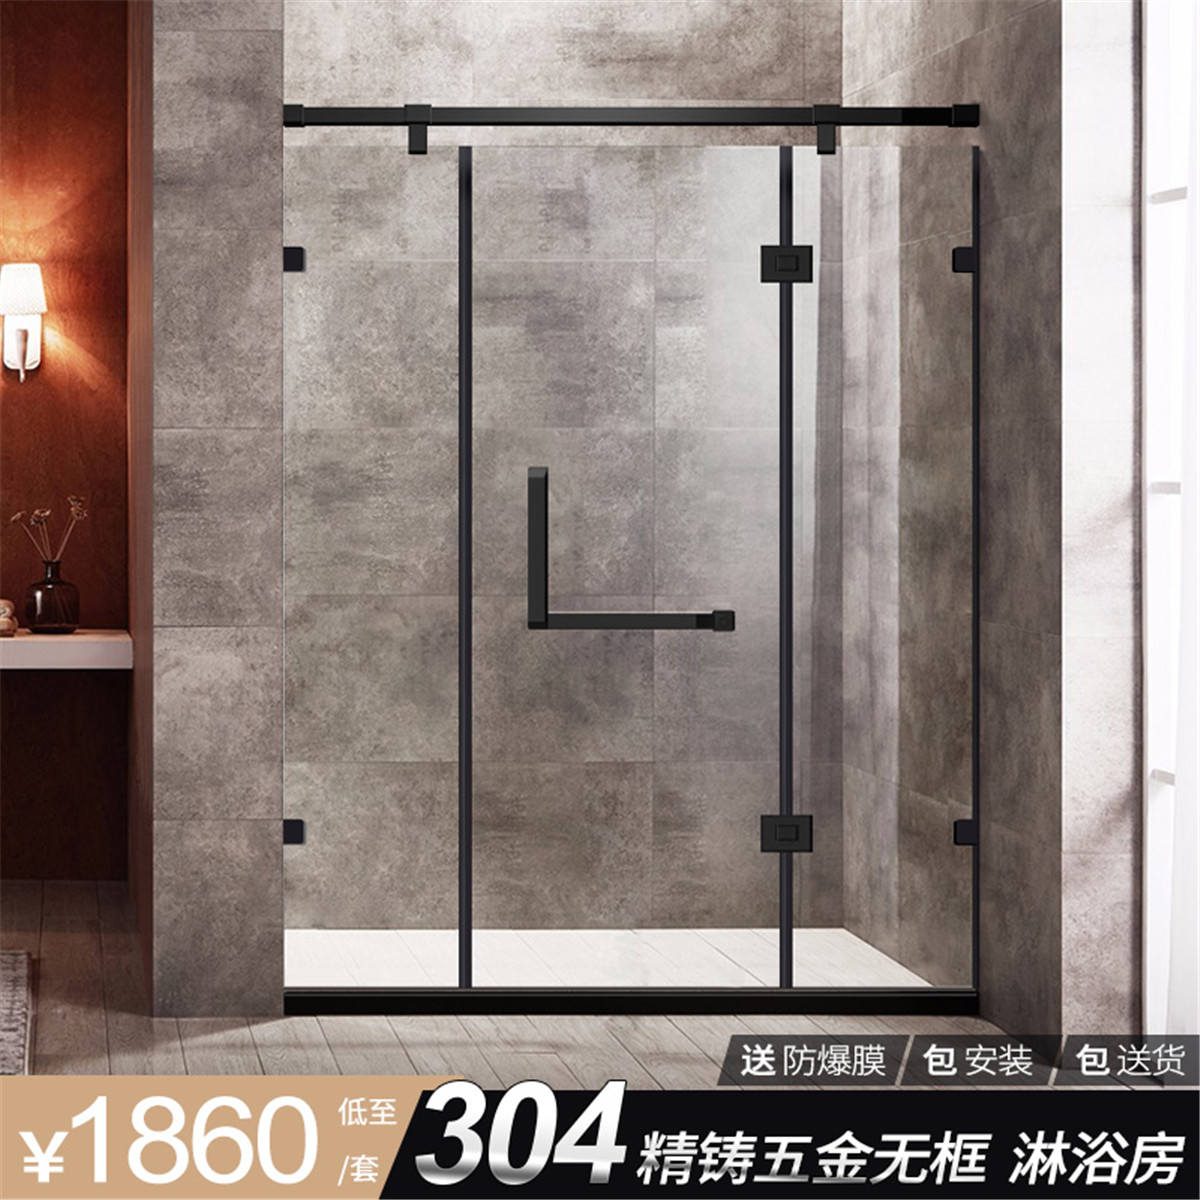 黑色平开门不锈钢淋浴房卫生间隔断干湿分离浴室玻璃门一字形